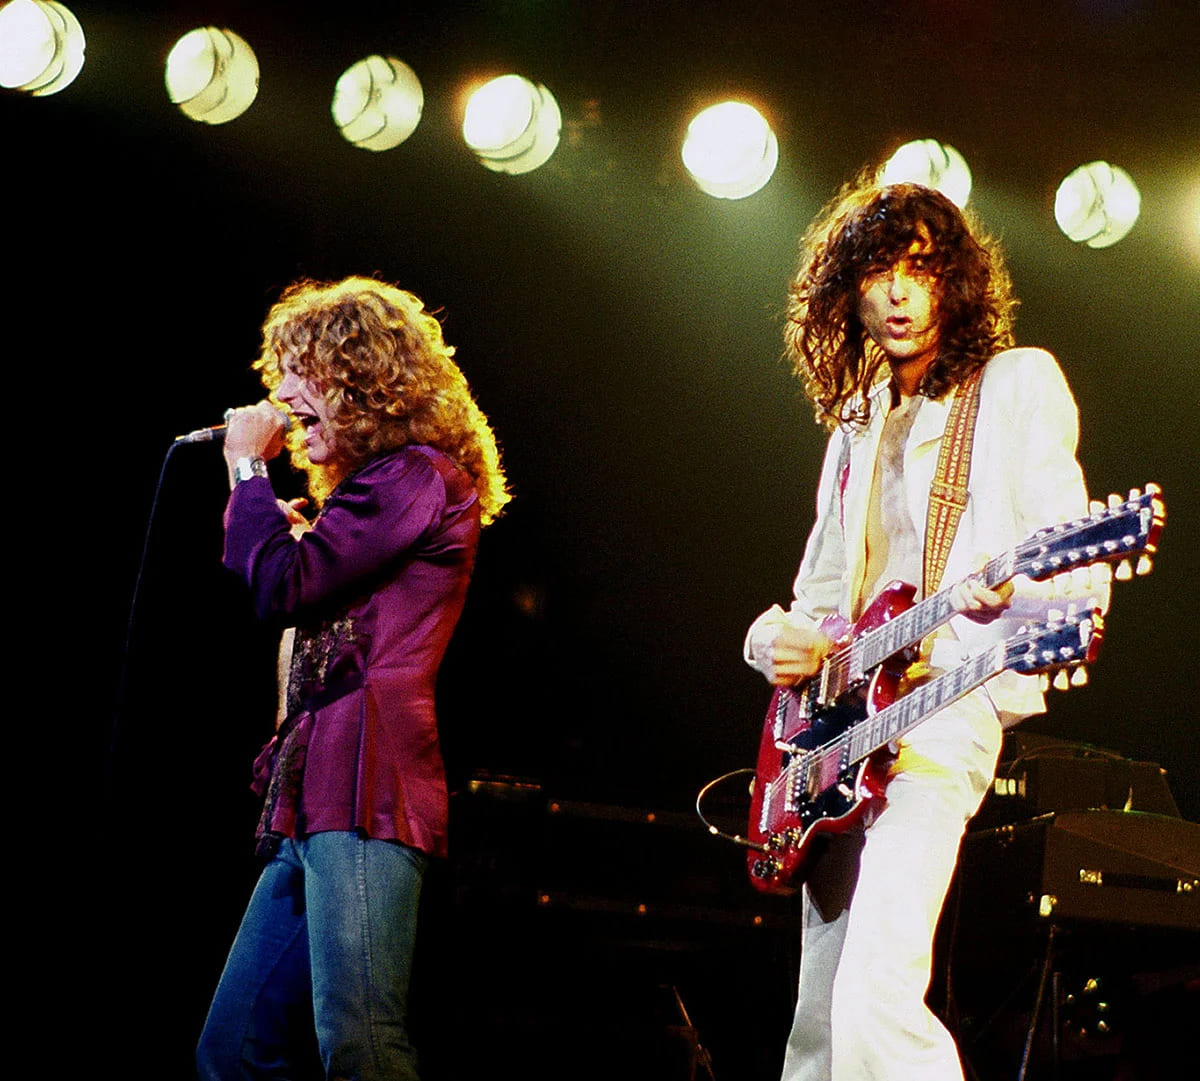 Robert Plant (à gauche) et Jimmy Page (à droite) de Led Zeppelin, lors d'un concert à Chicago, Illinois. Photo : Jim Sammaria